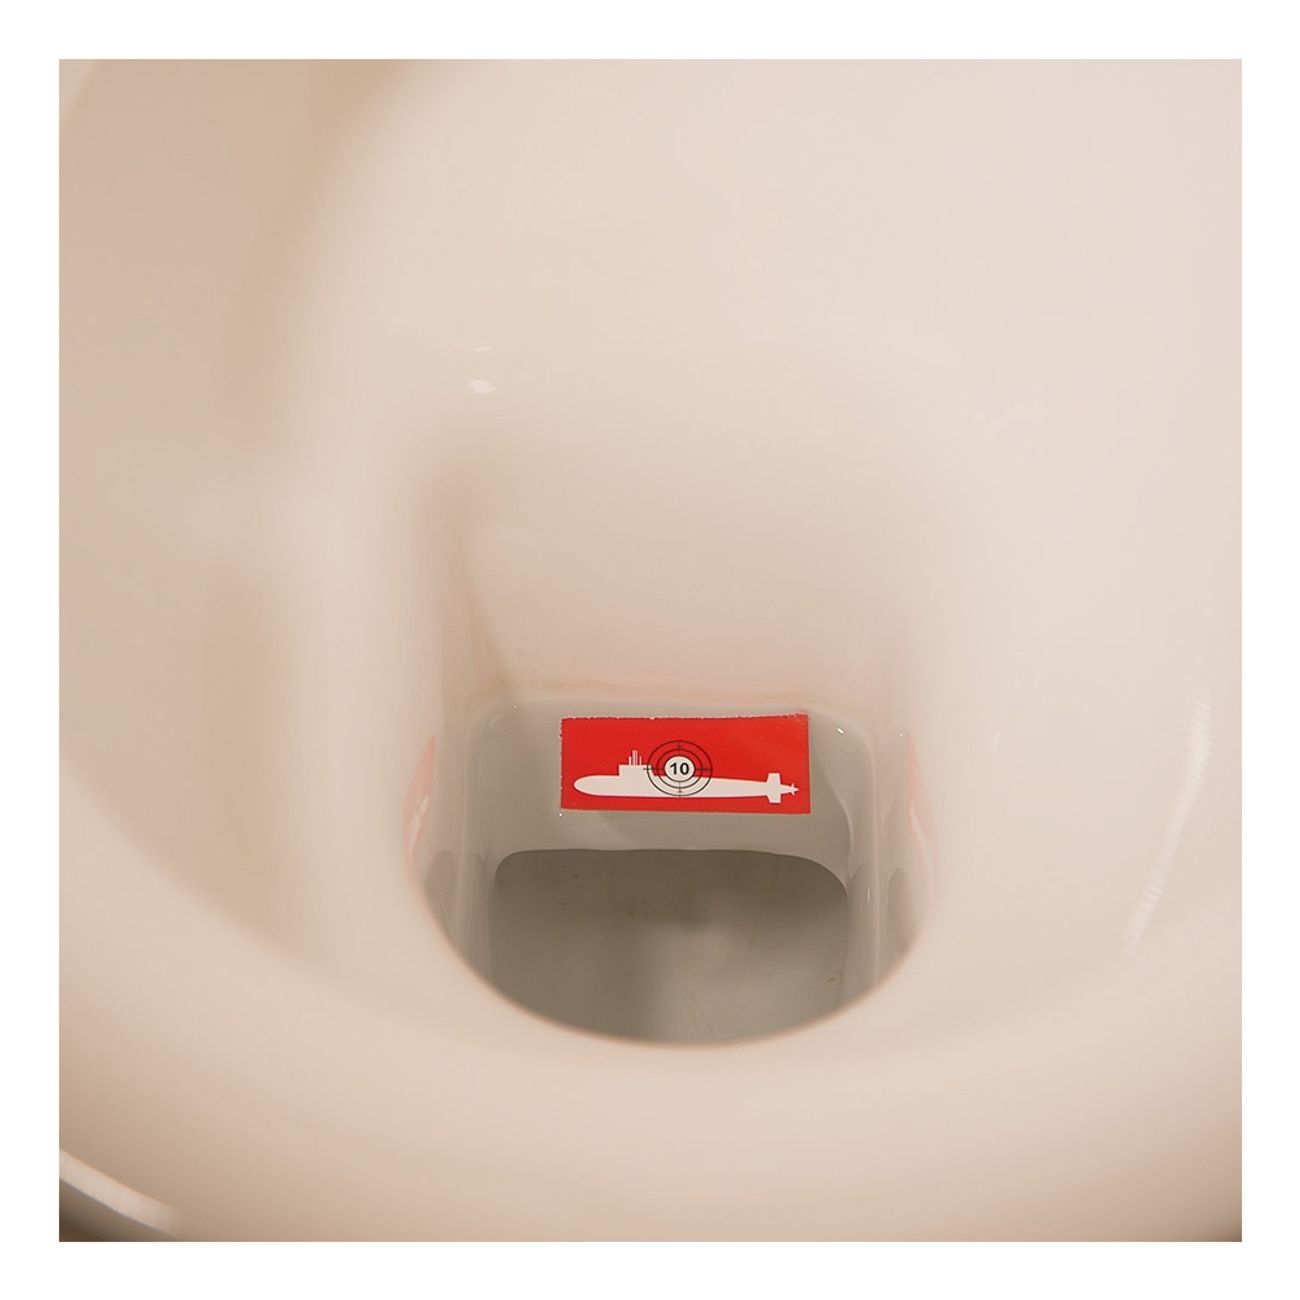 potty-pot-shots-toalettspel-3